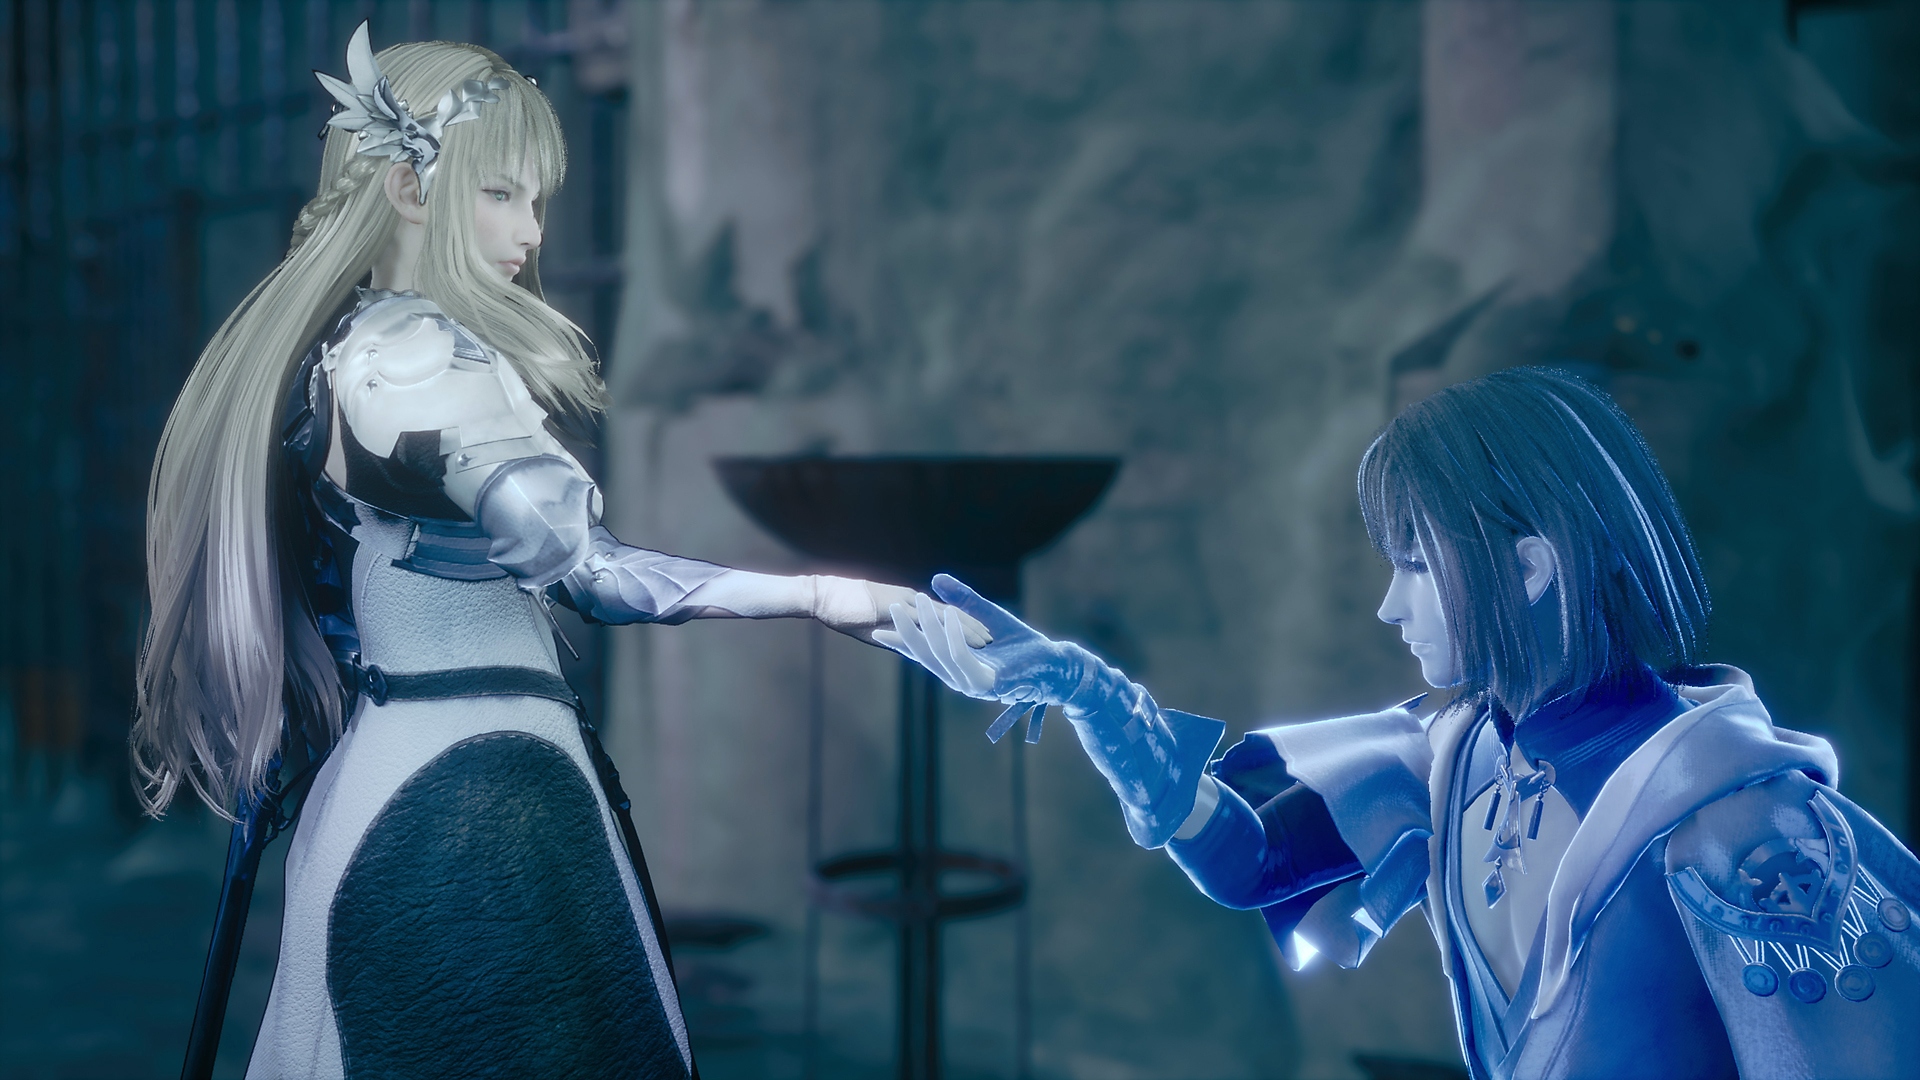 Captura de pantalla de Valkyrie Elysium que muestra a un caballero azul brillante arrodillado frente a una princesa